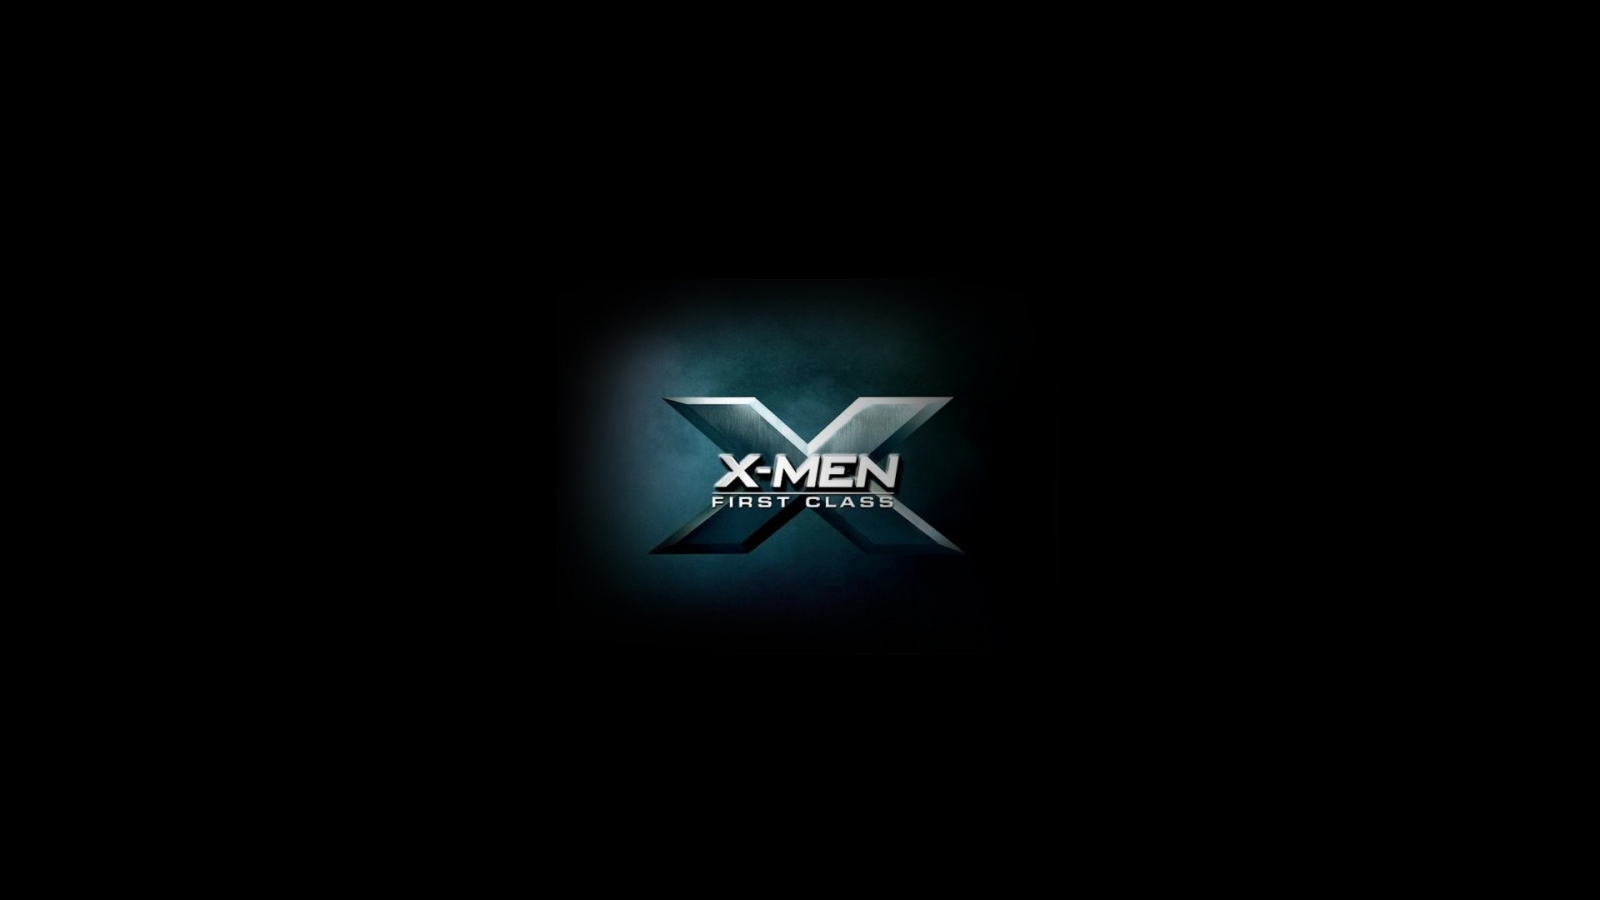 X Men First Class 2011 for 1600 x 900 HDTV resolution